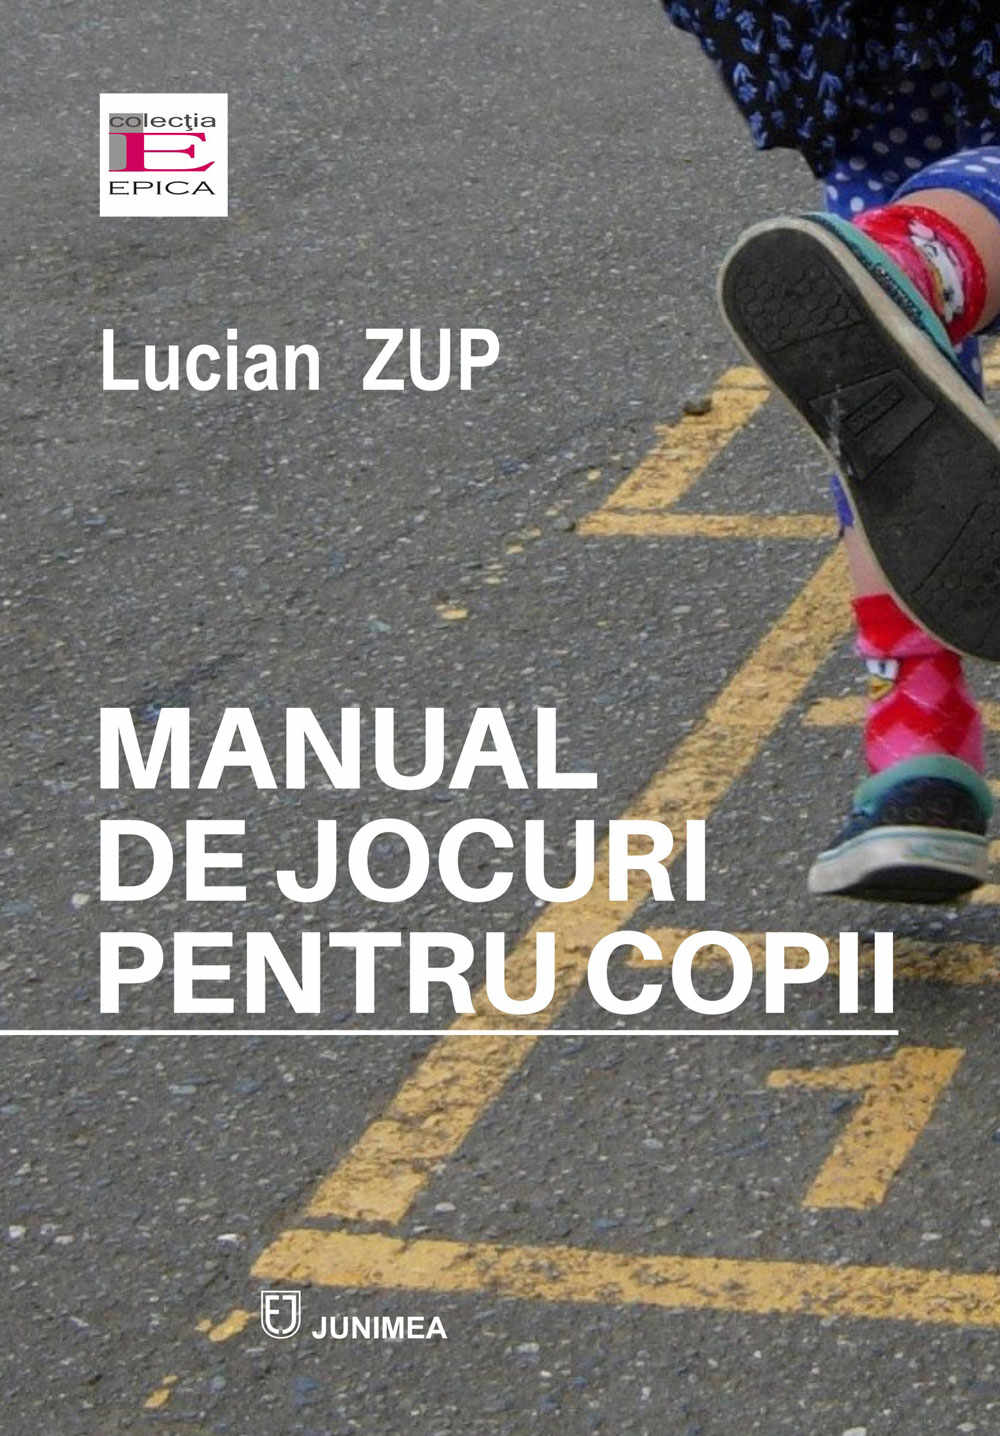 Manual de jocuri pentru copii | Lucian Zup